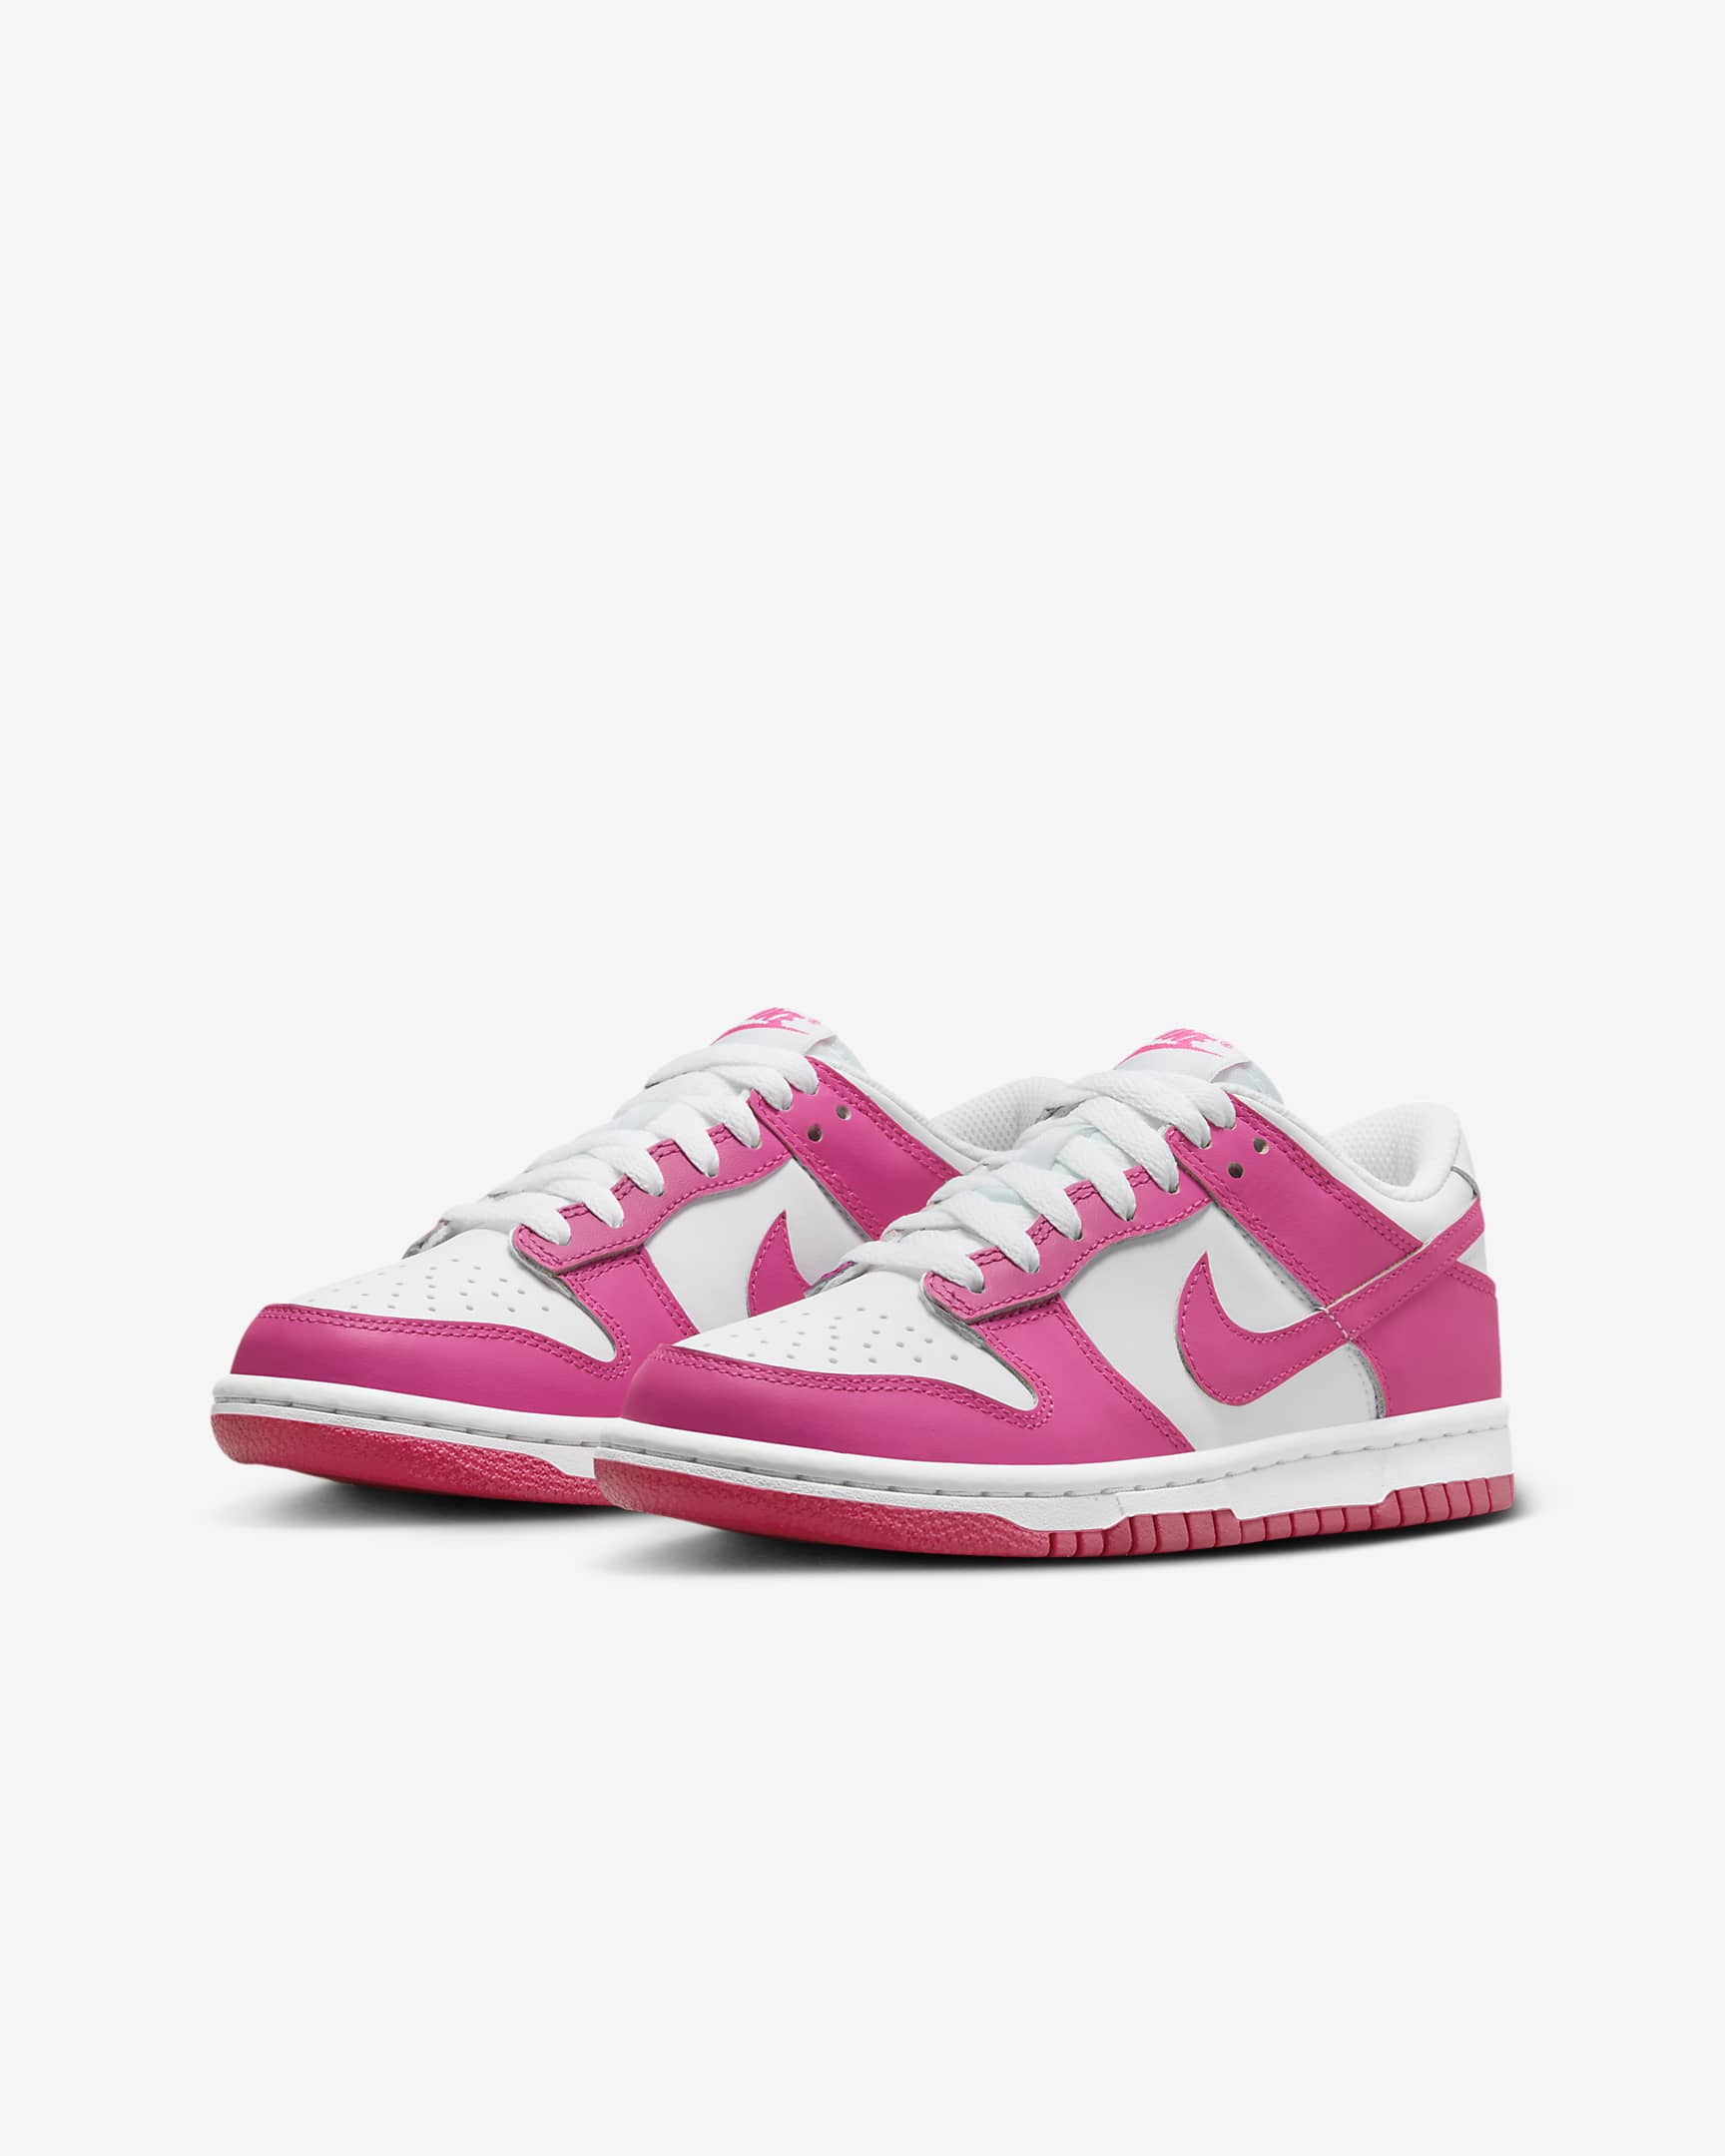 Nike Dunk Low Older Kids' Shoes - White/Pink/Laser Fuchsia